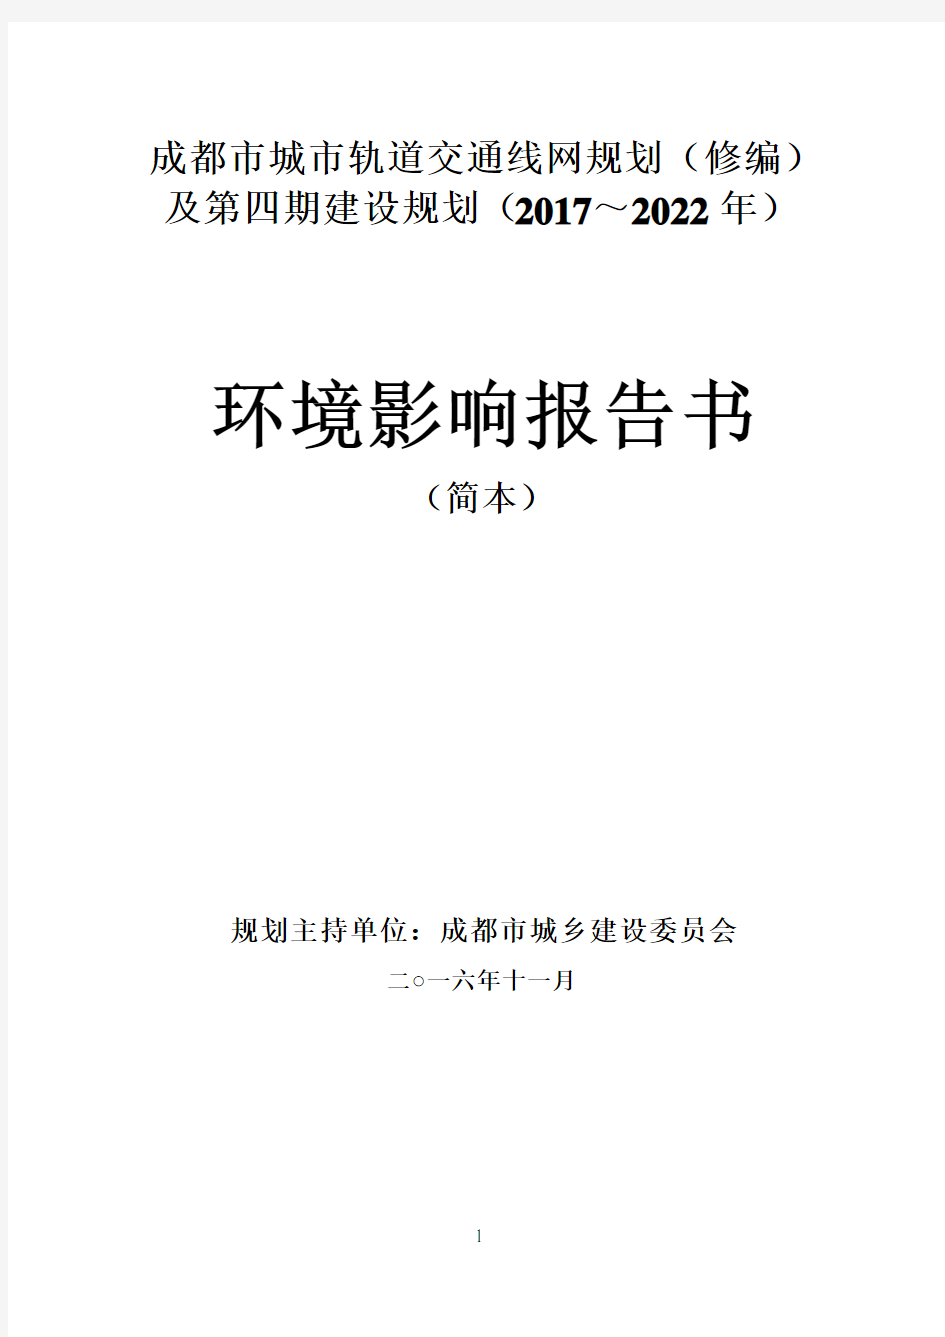 成都市城市轨道交通线网规划(修编)及第四期建设规划(2017～2022年)